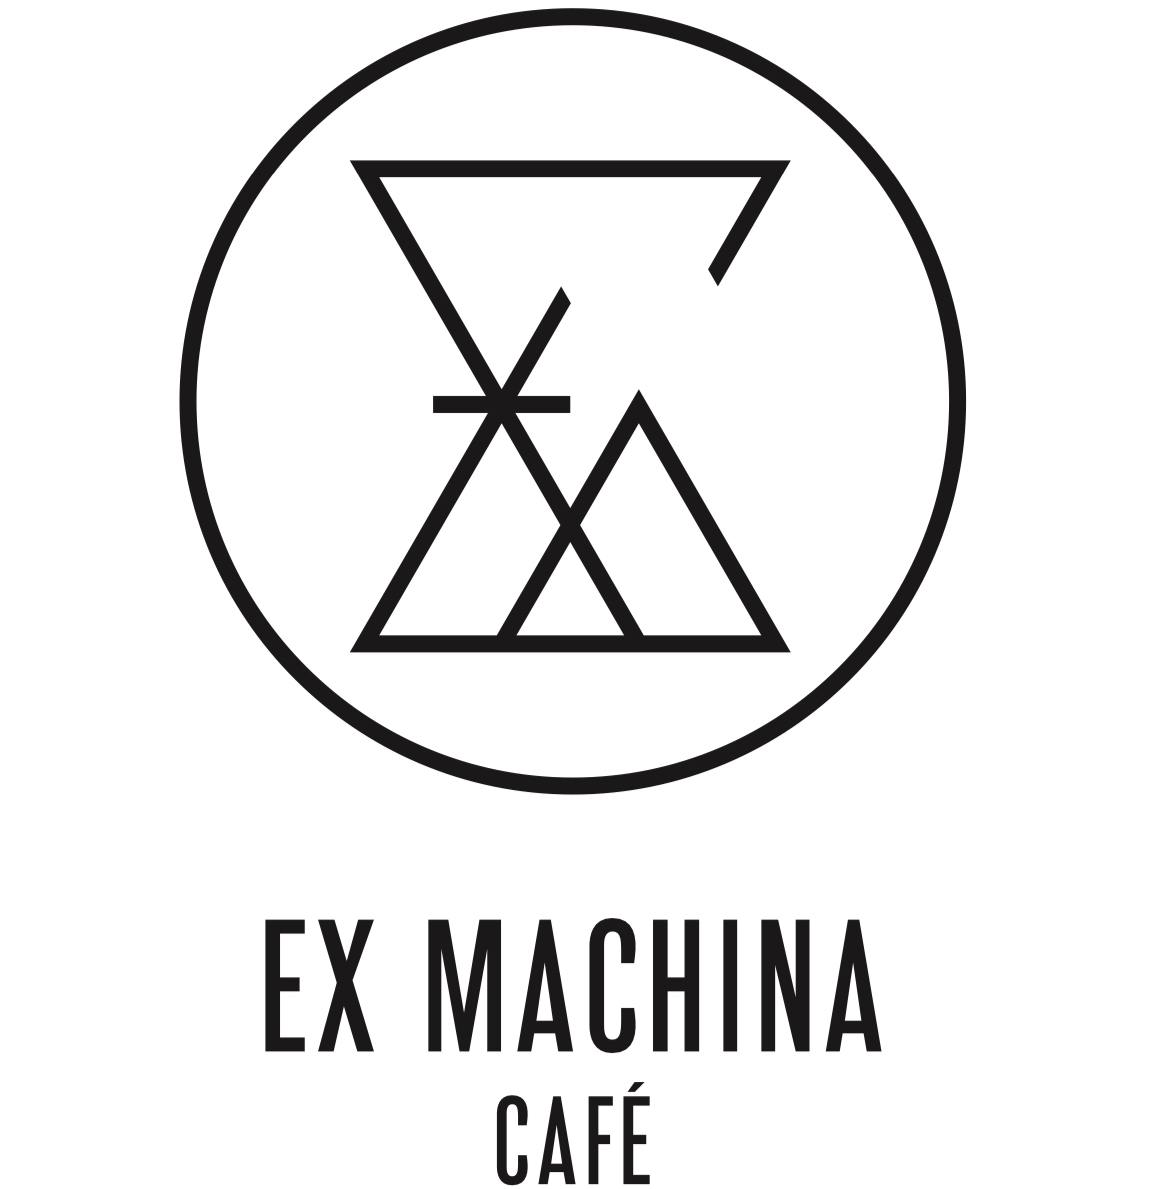 Café Ex Machina